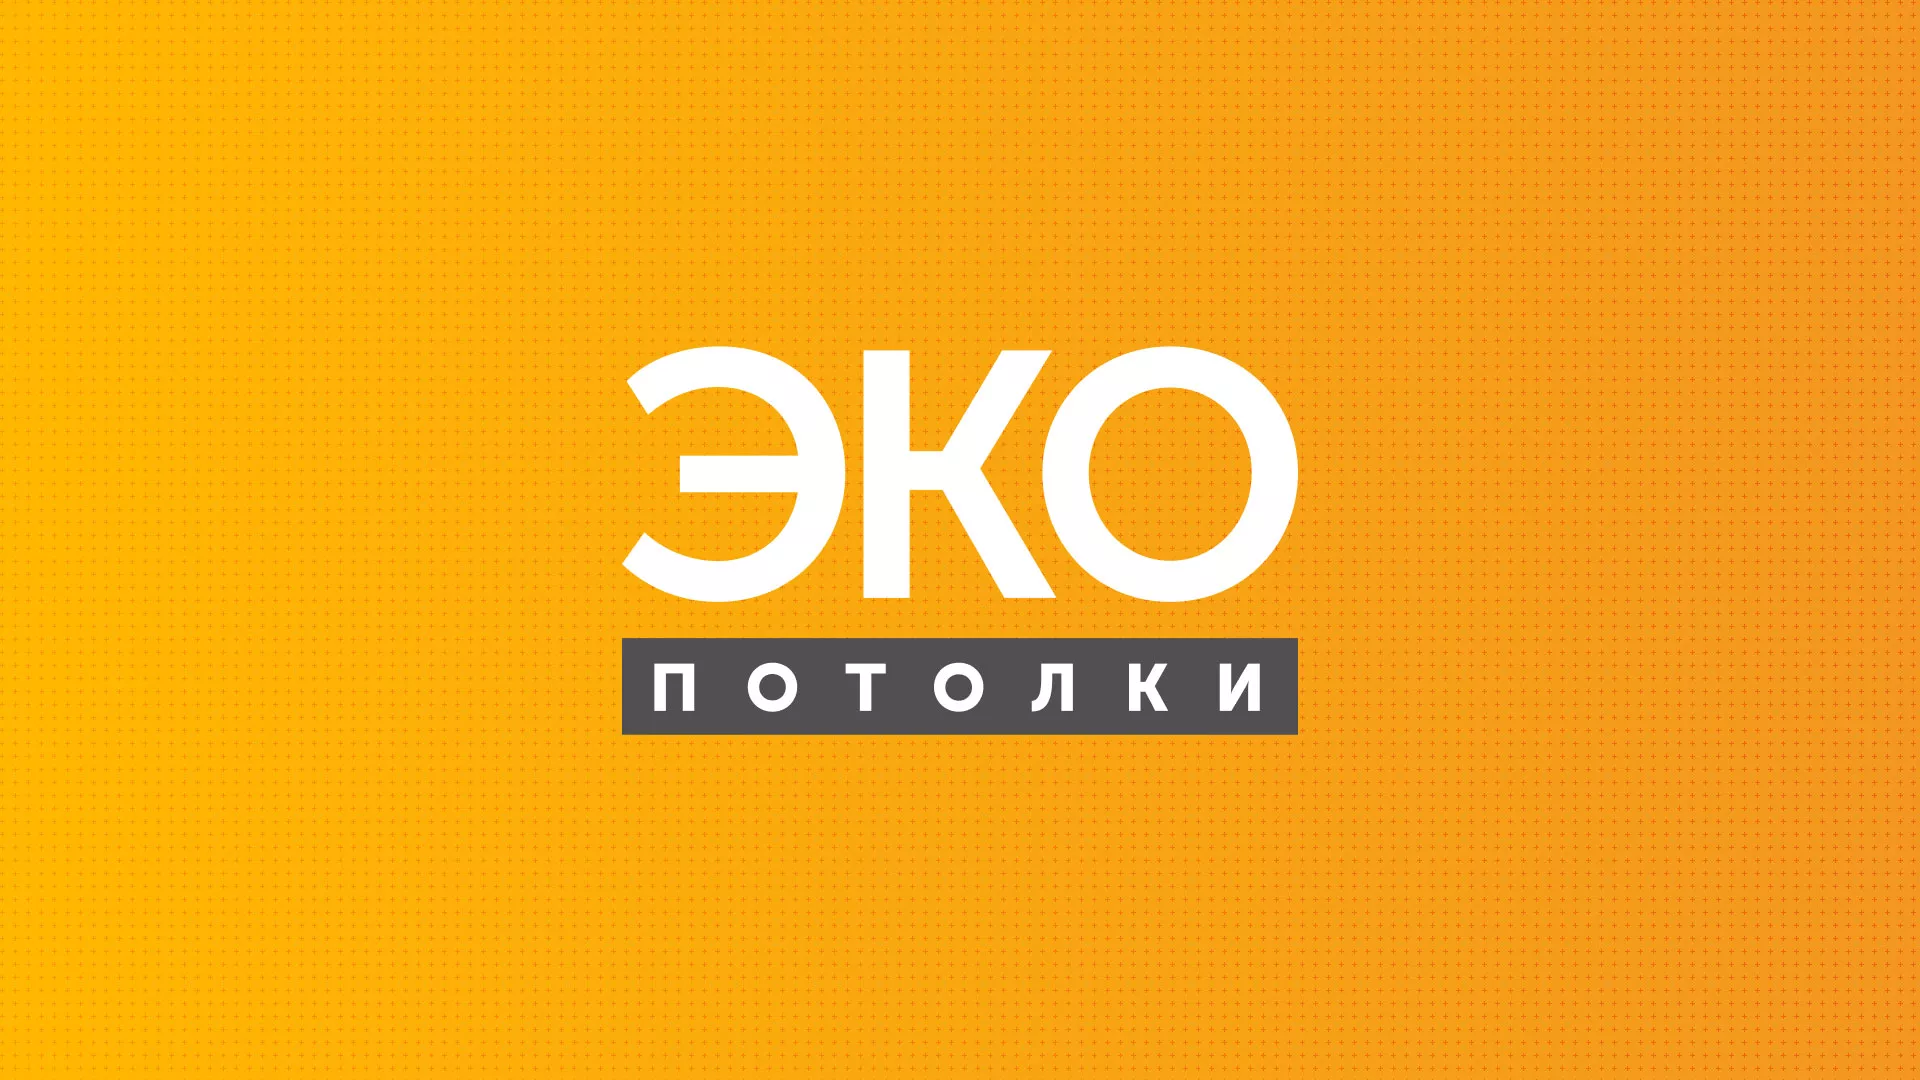 Разработка сайта по натяжным потолкам «Эко Потолки» в Суворове